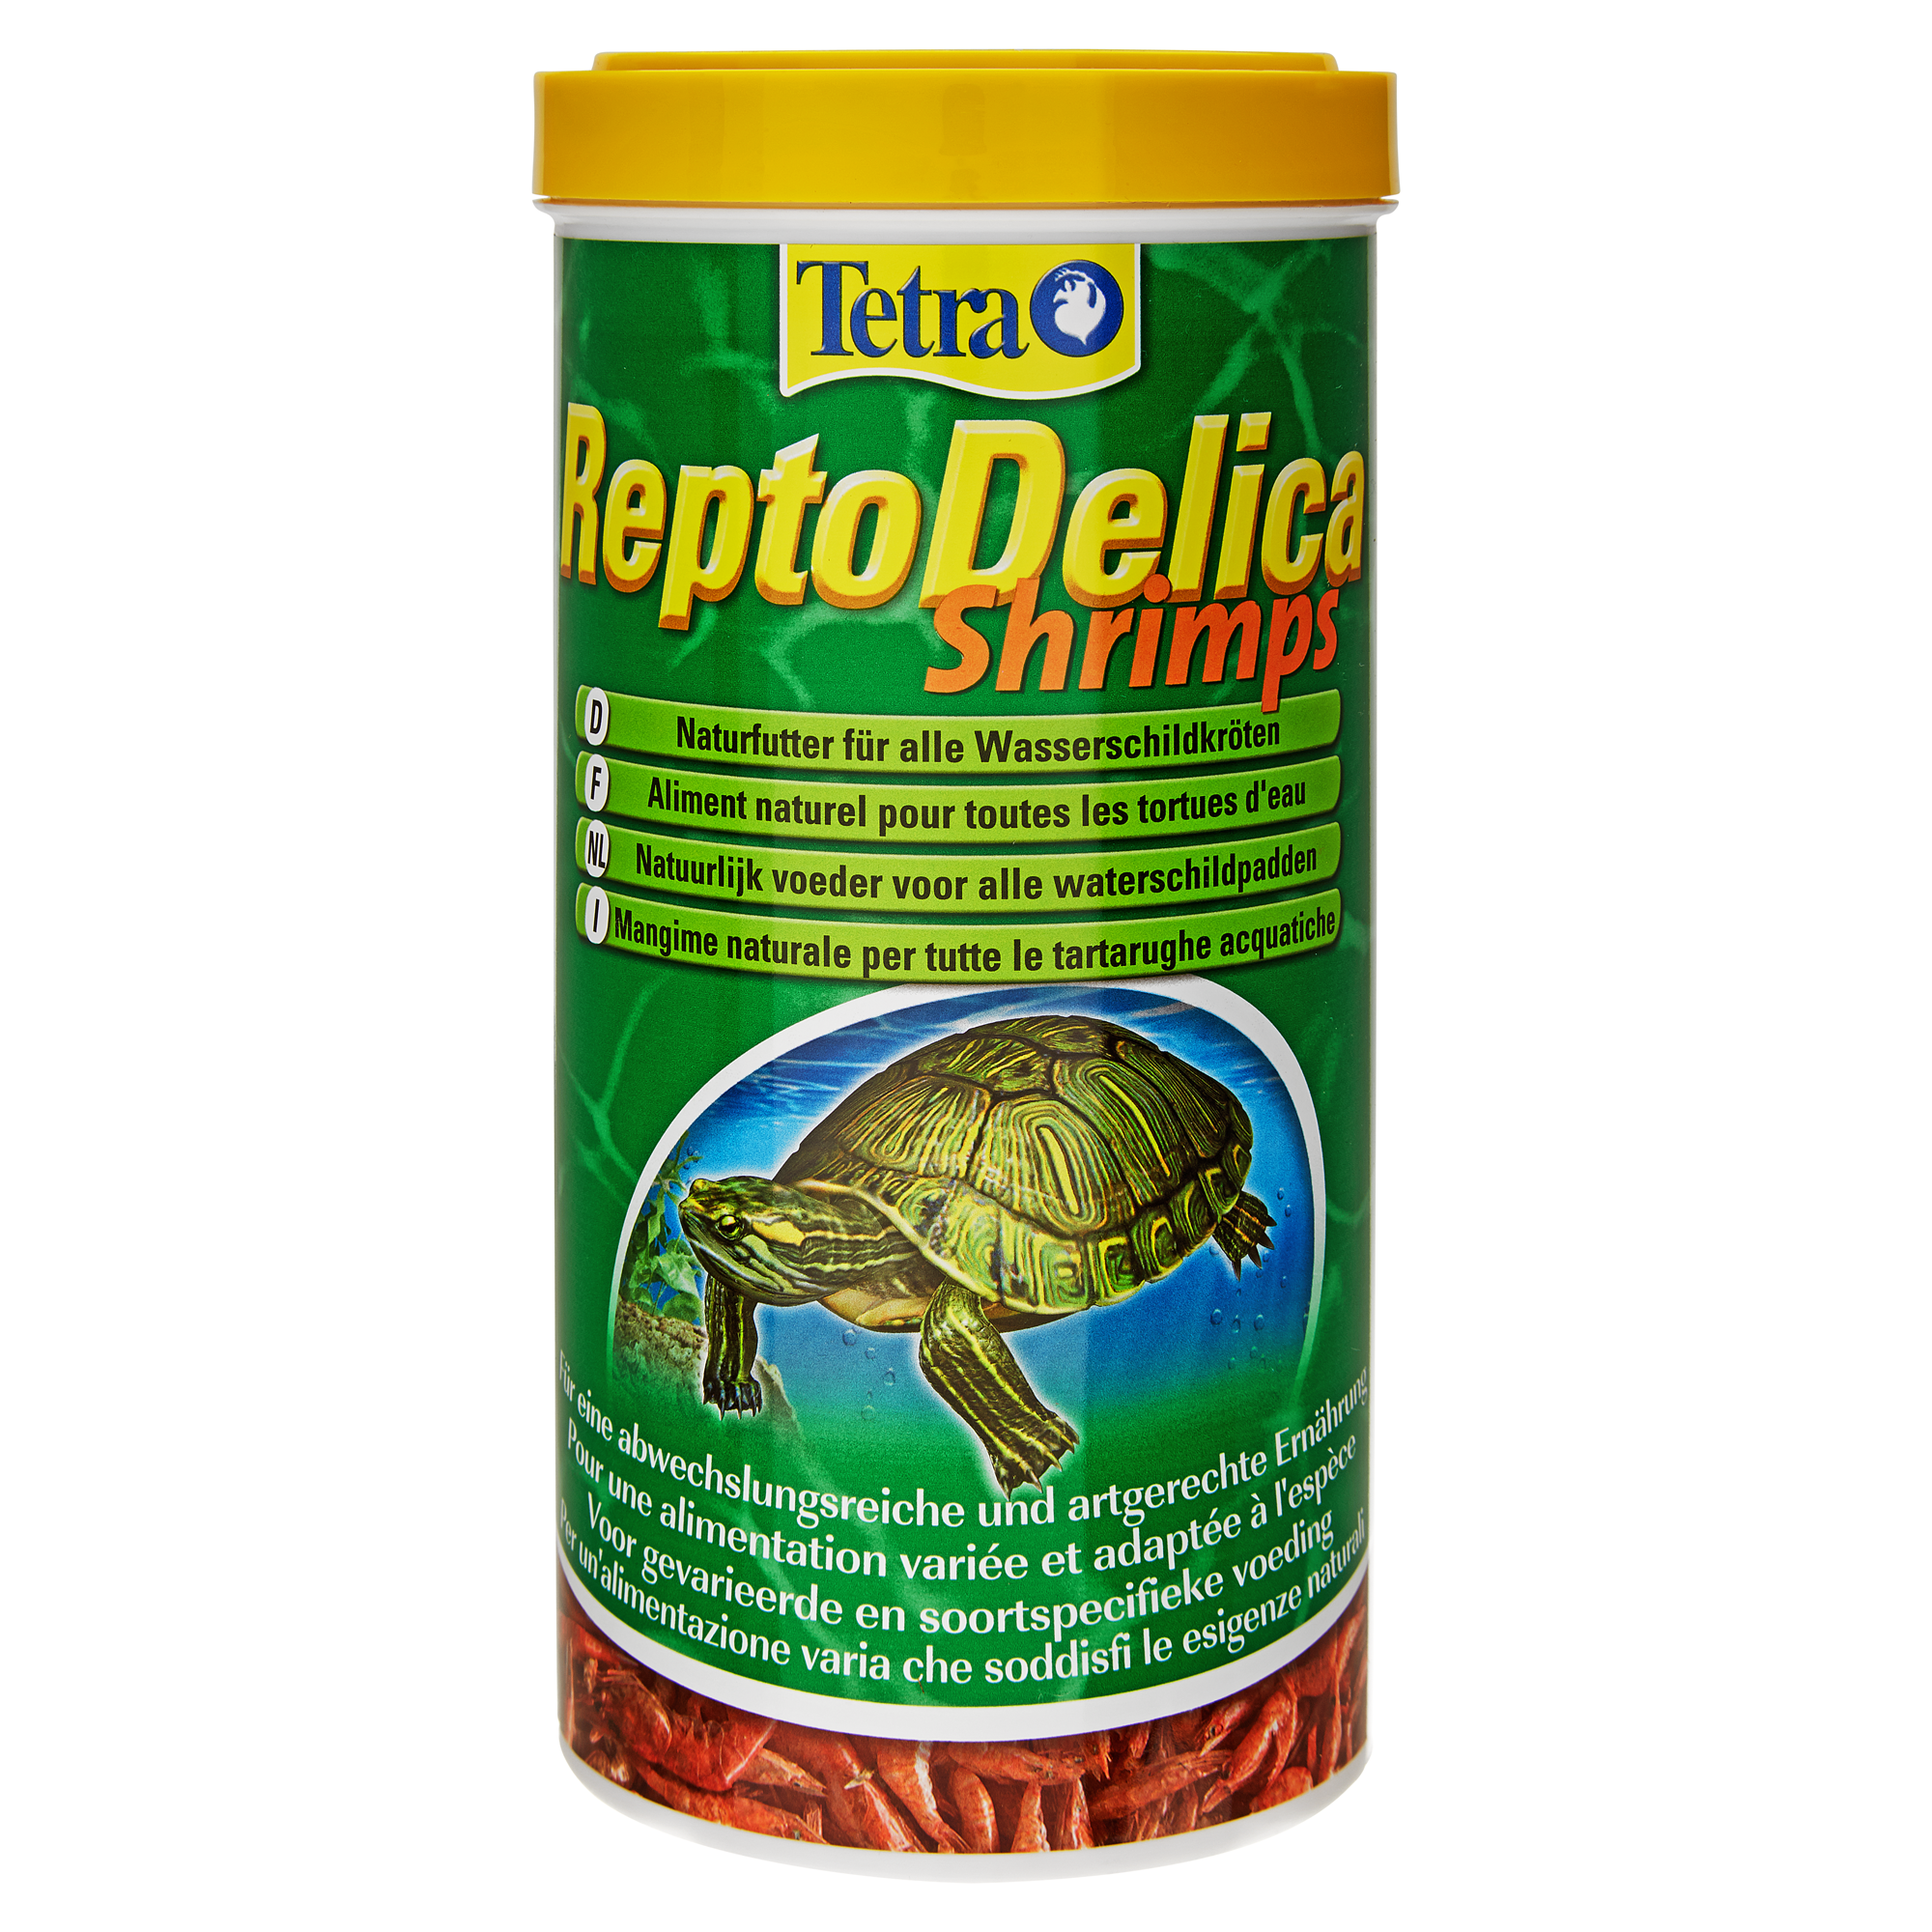 Schildkrötenfutter "ReptoDelica" Shrimps 100 g + product picture